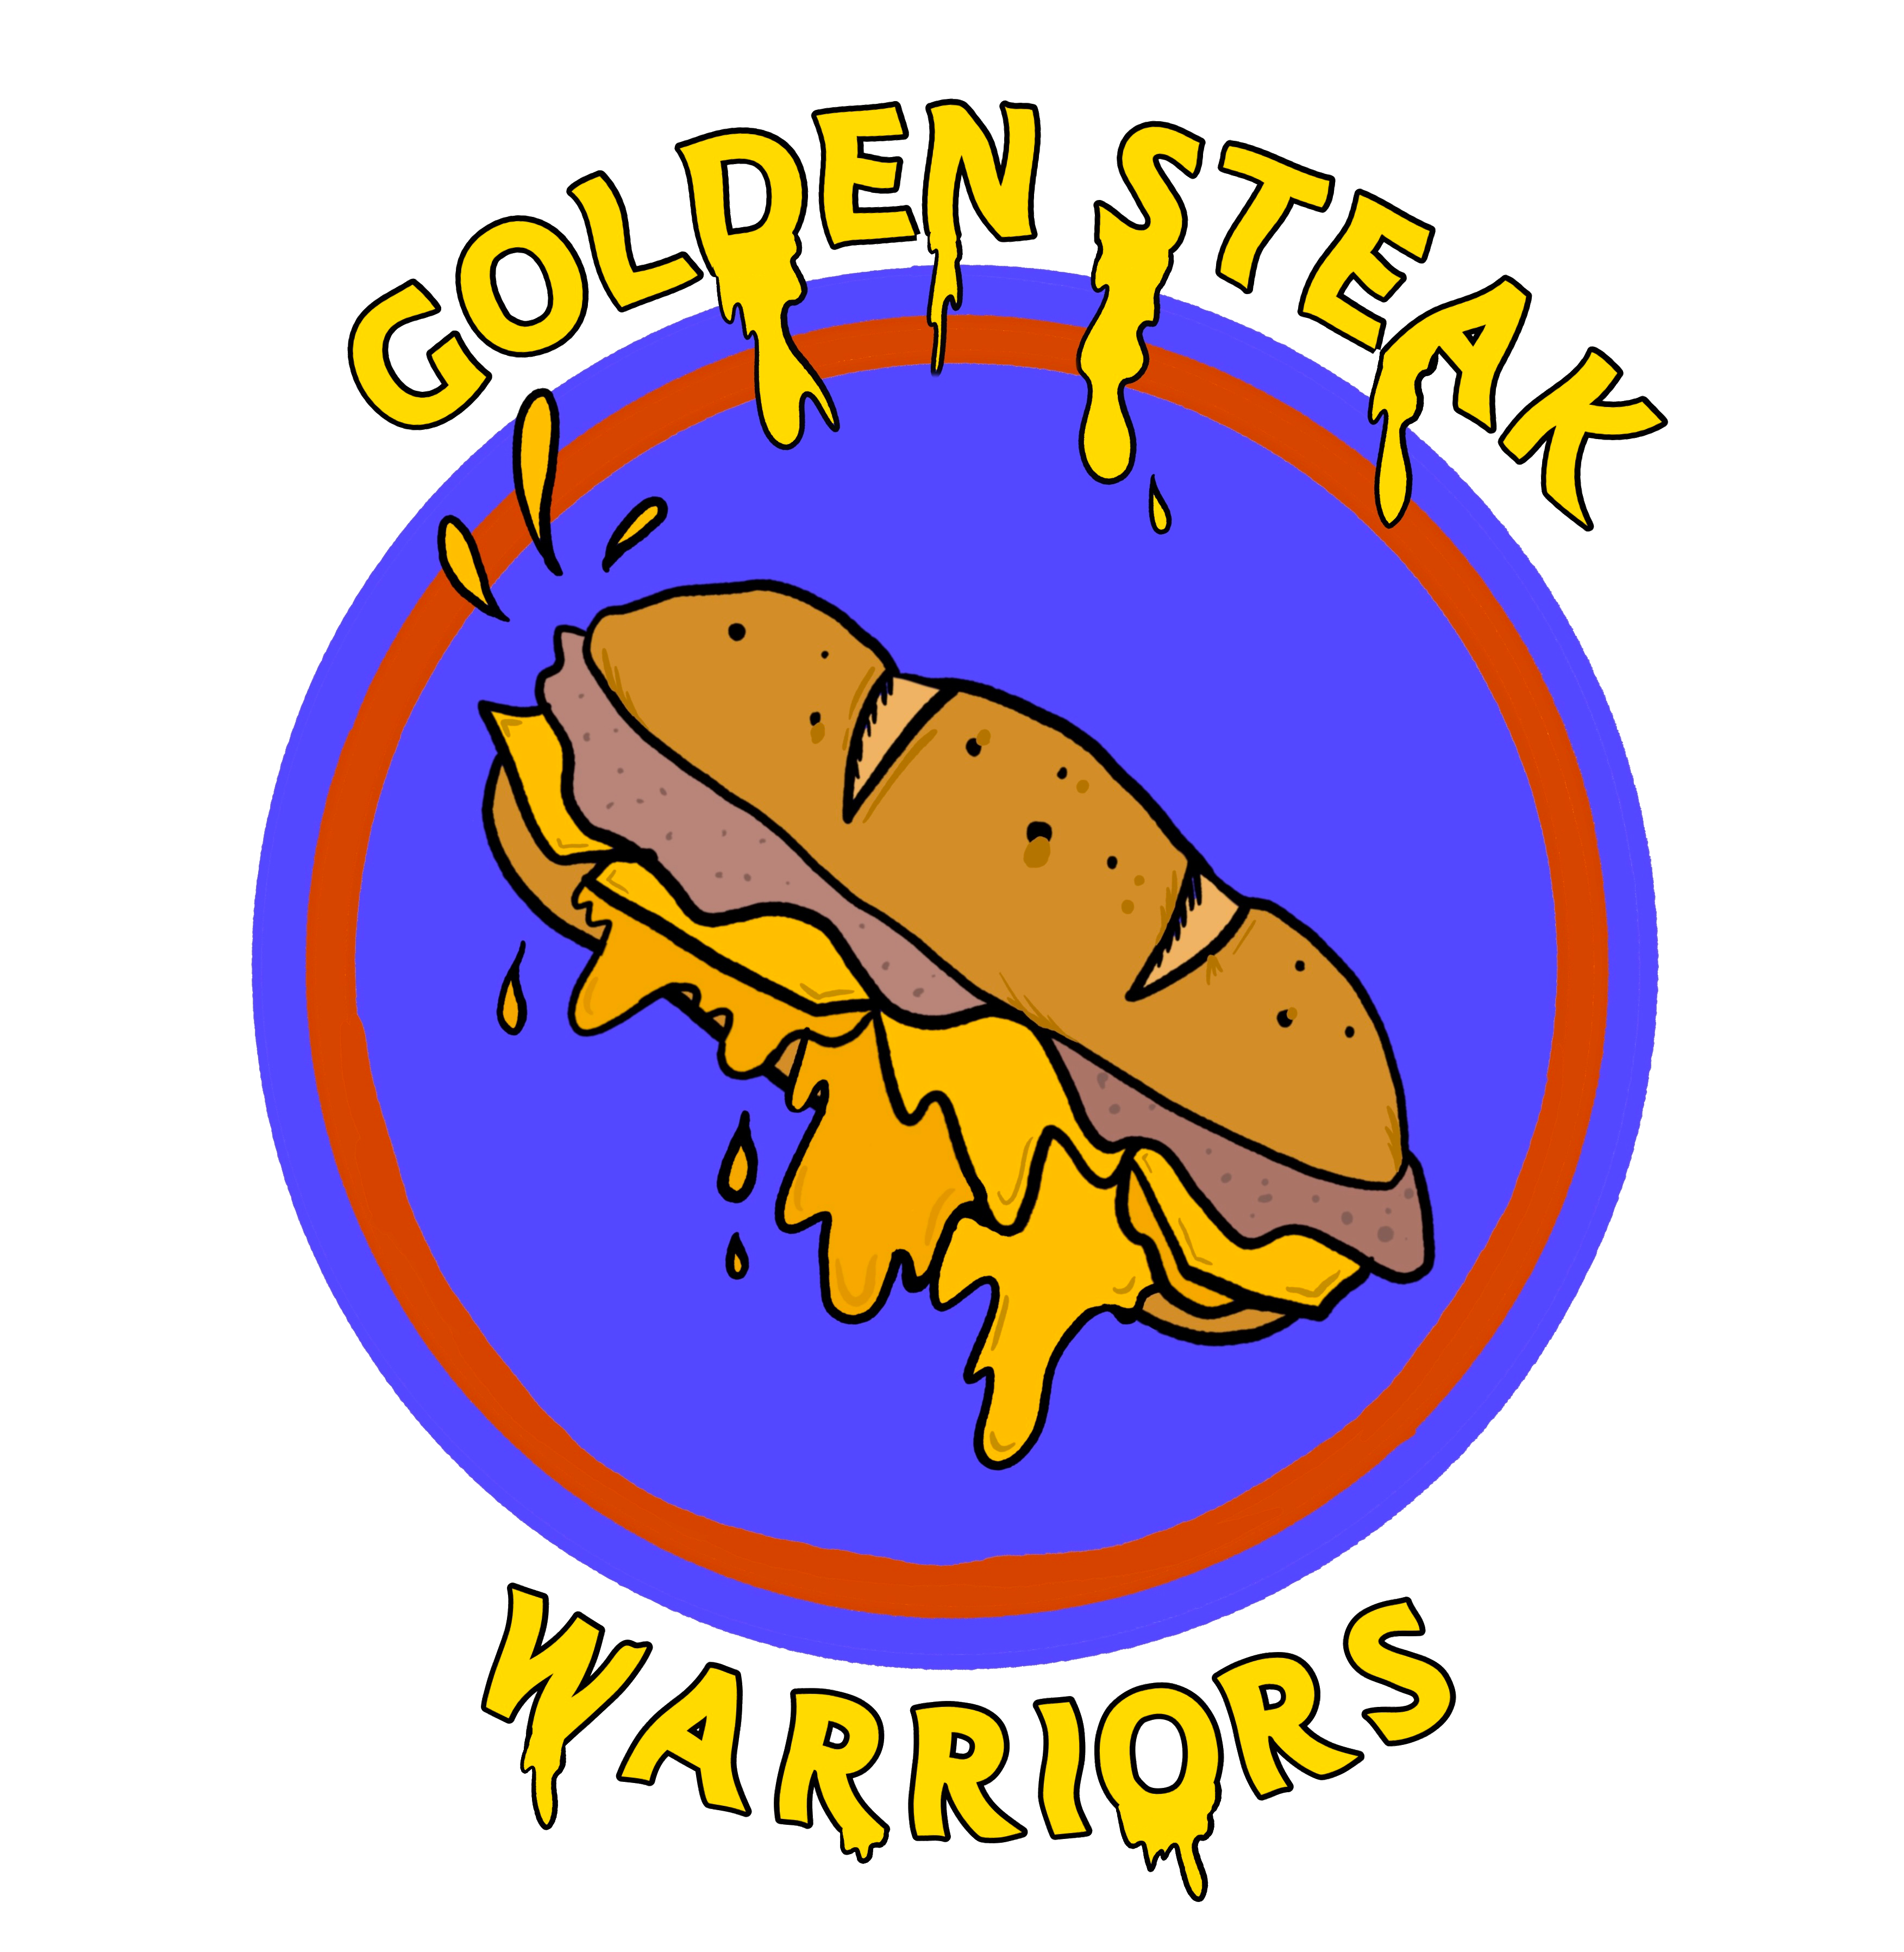 Golden Steak Warriors logo